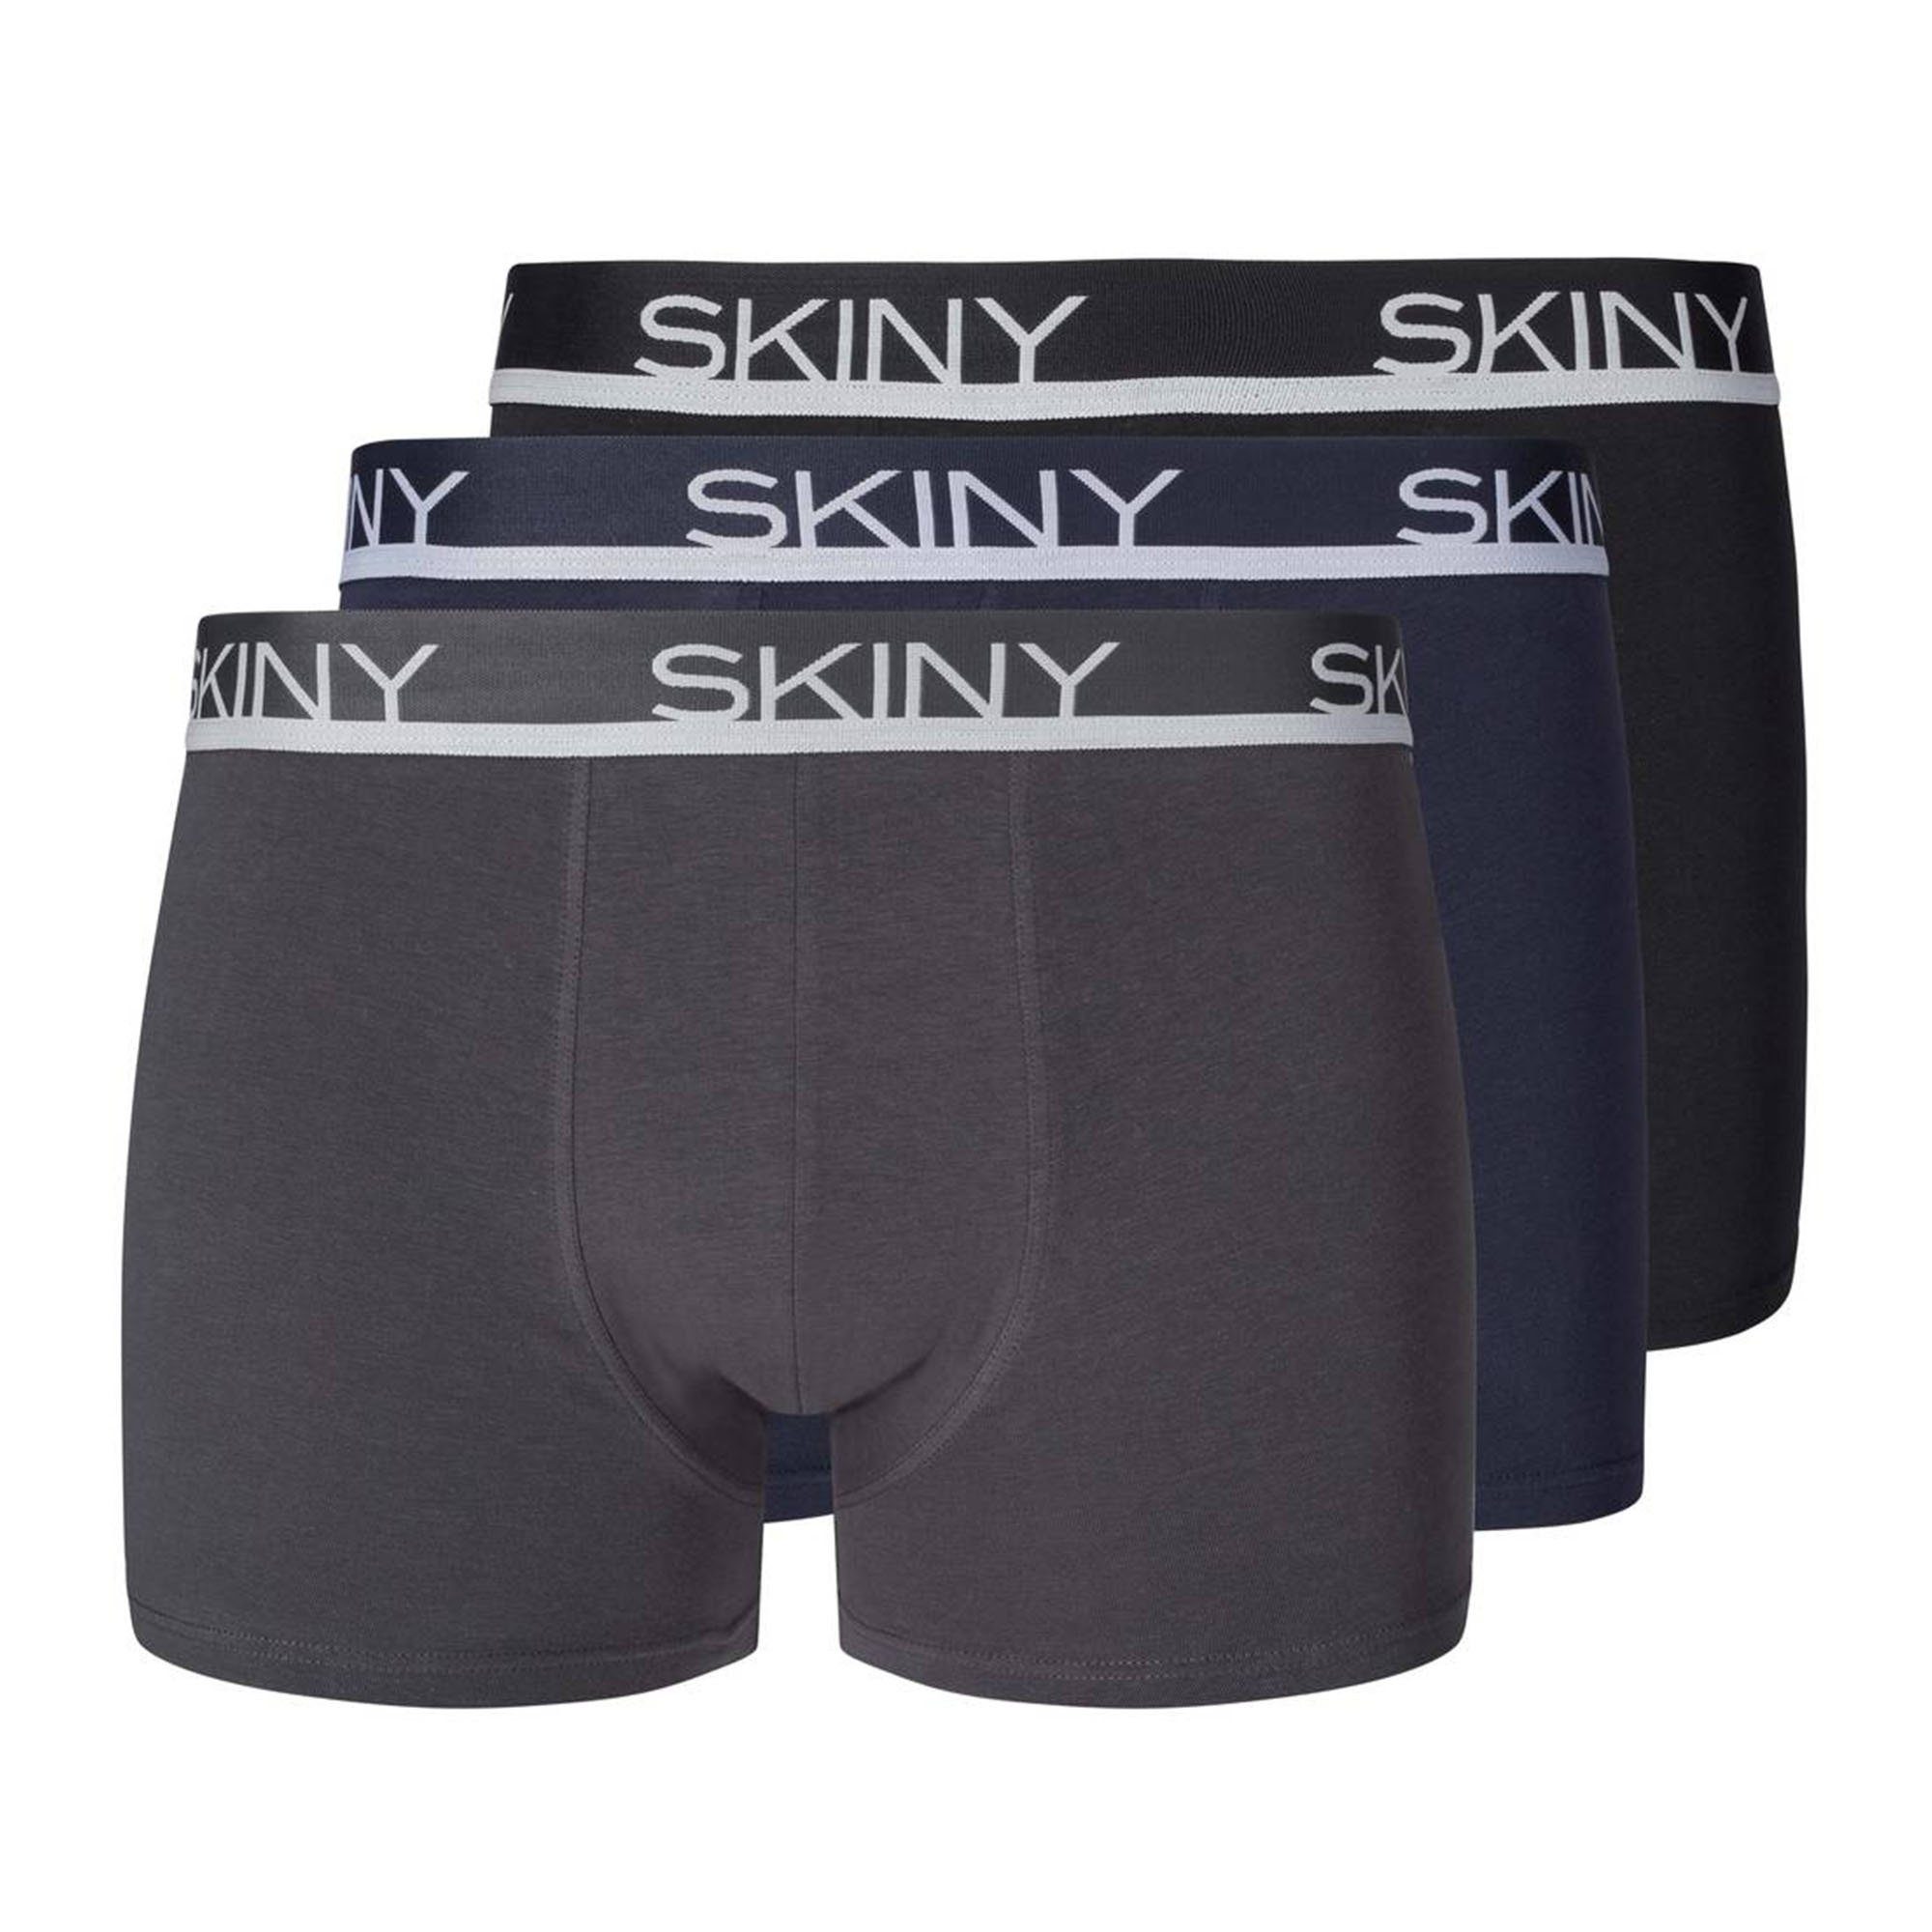 Skiny Boxer Herren Boxer Shorts 3er Pack - Trunks, Pants Grau/Blau/Schwarz